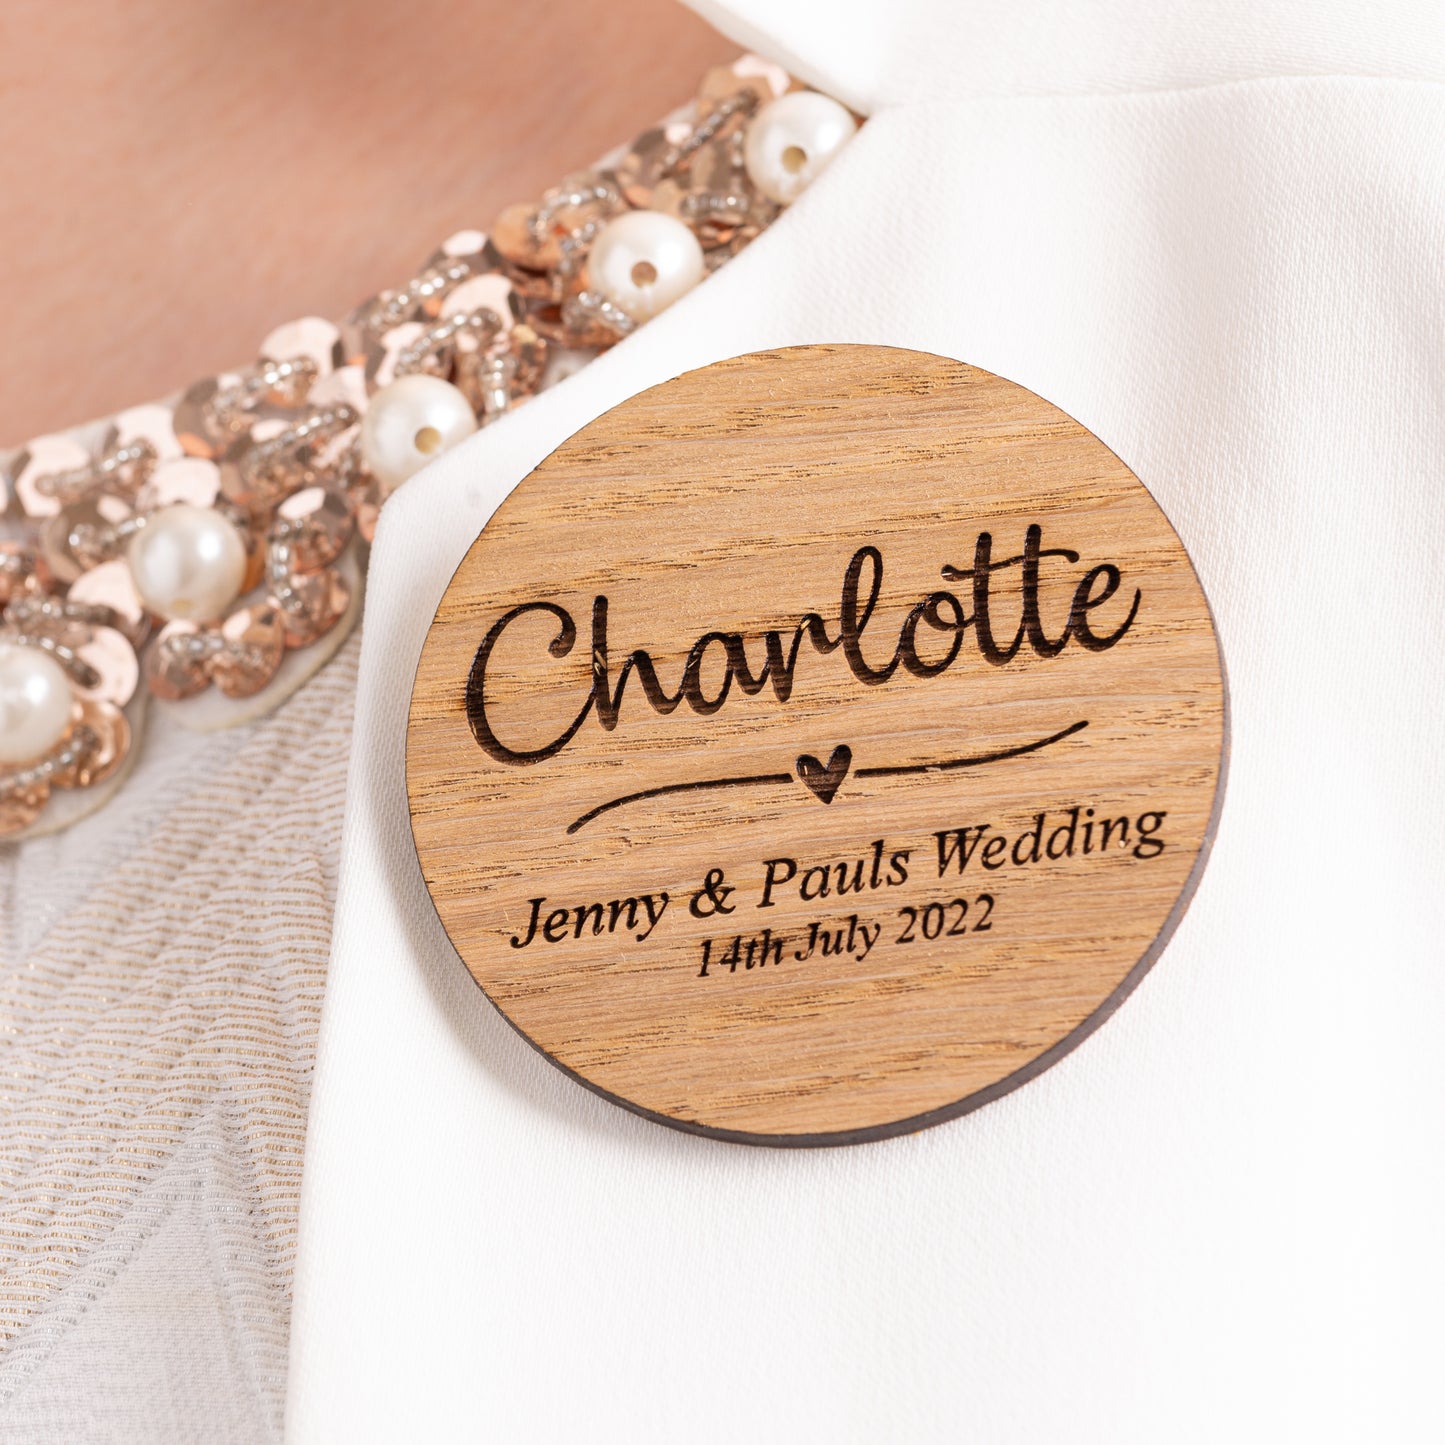 Wooden Wedding Name Badges - Unique Place Card Idea